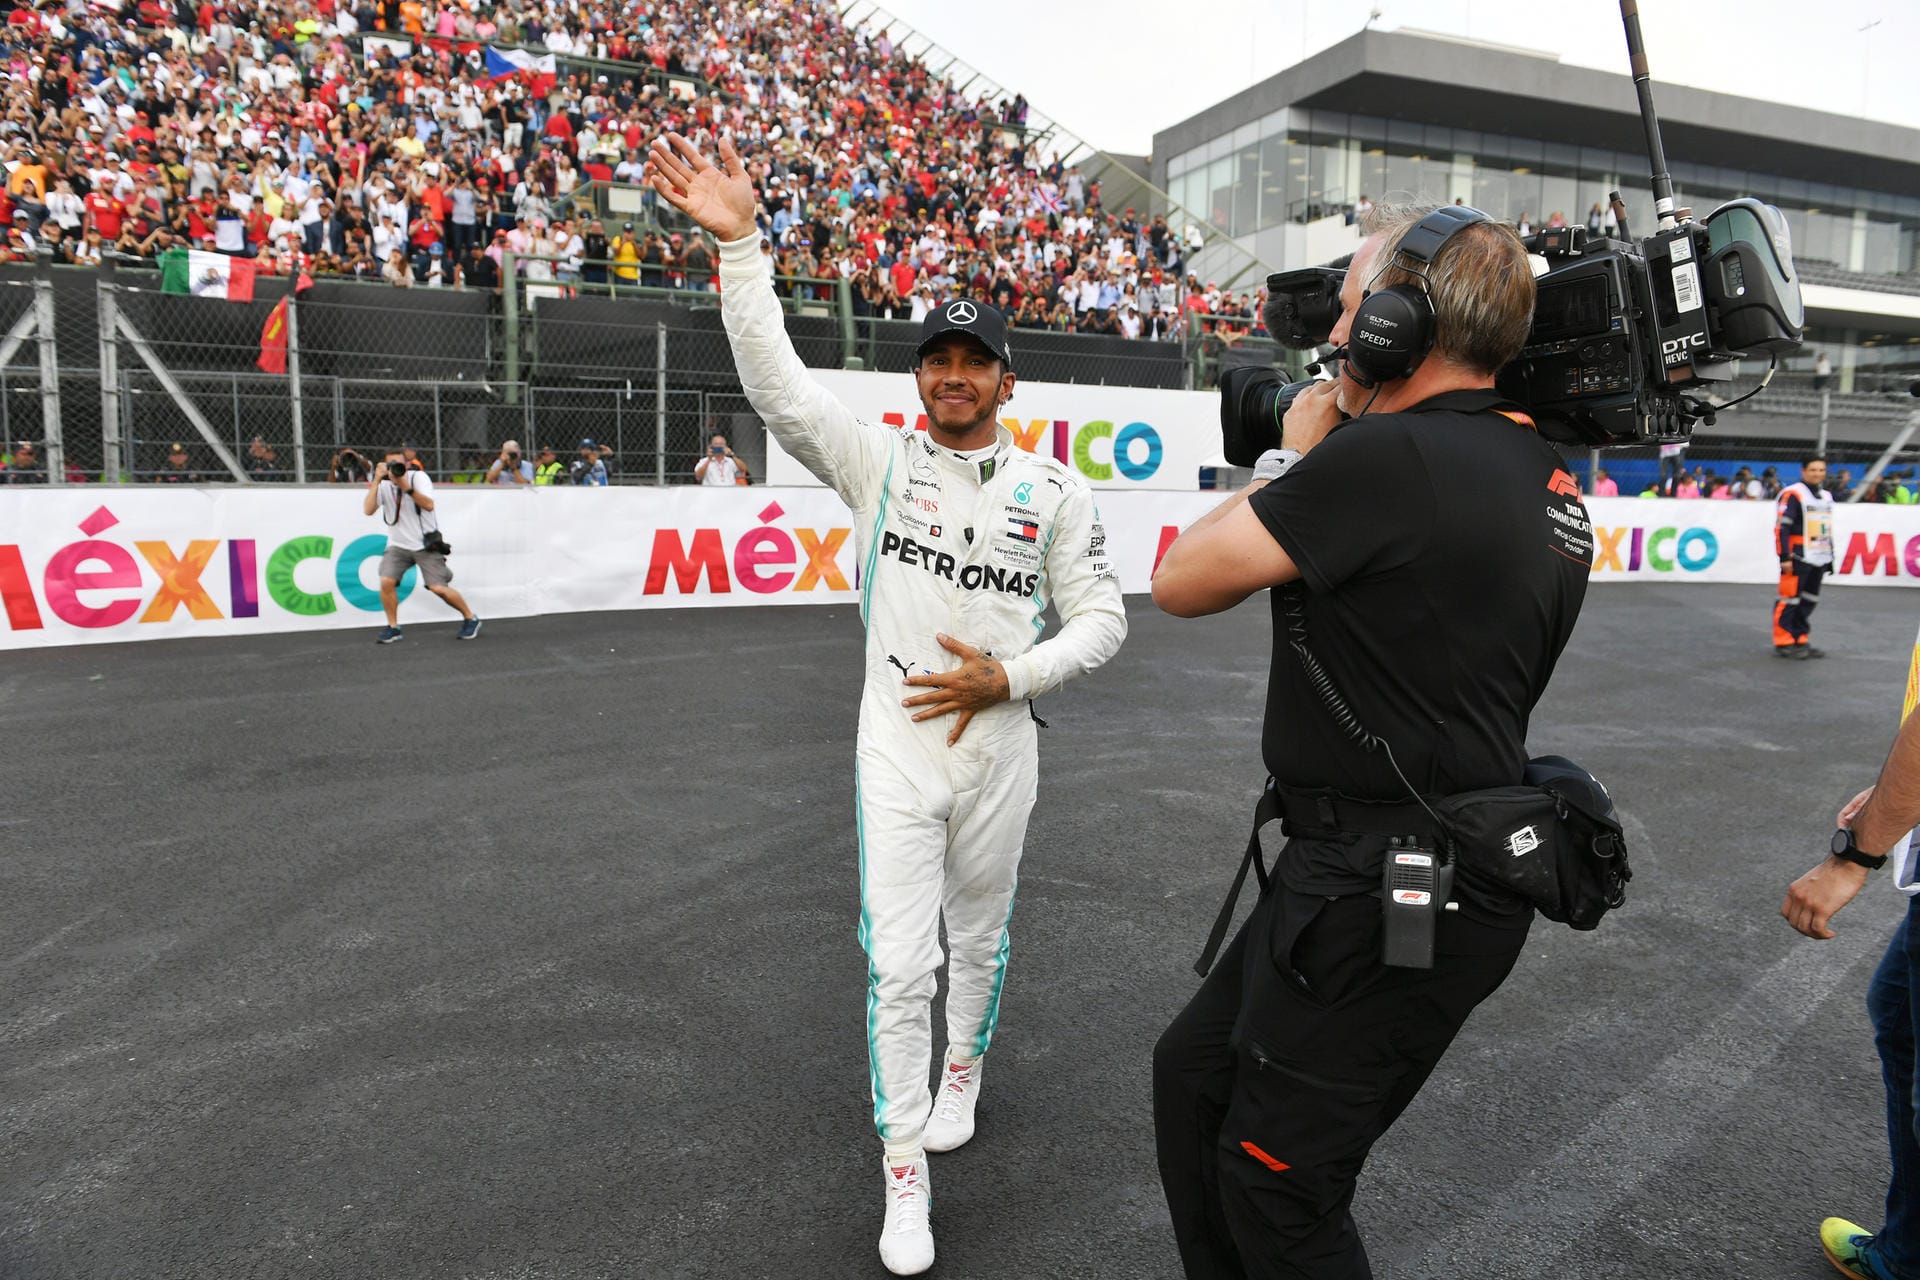 Excélsior (Mexiko): "Die Strategie war entscheidend für Lewis Hamiltons Sieg bei der diesjährigen Ausgabe des Großen Preises von Mexiko. Der Mexikaner Sergio Pérez bekam Ovationen des Publikums und kletterte bis auf den siebten Platz. Er egalisierte damit seine beste Platzierung im Autódromo Hermanos Rodríguez."